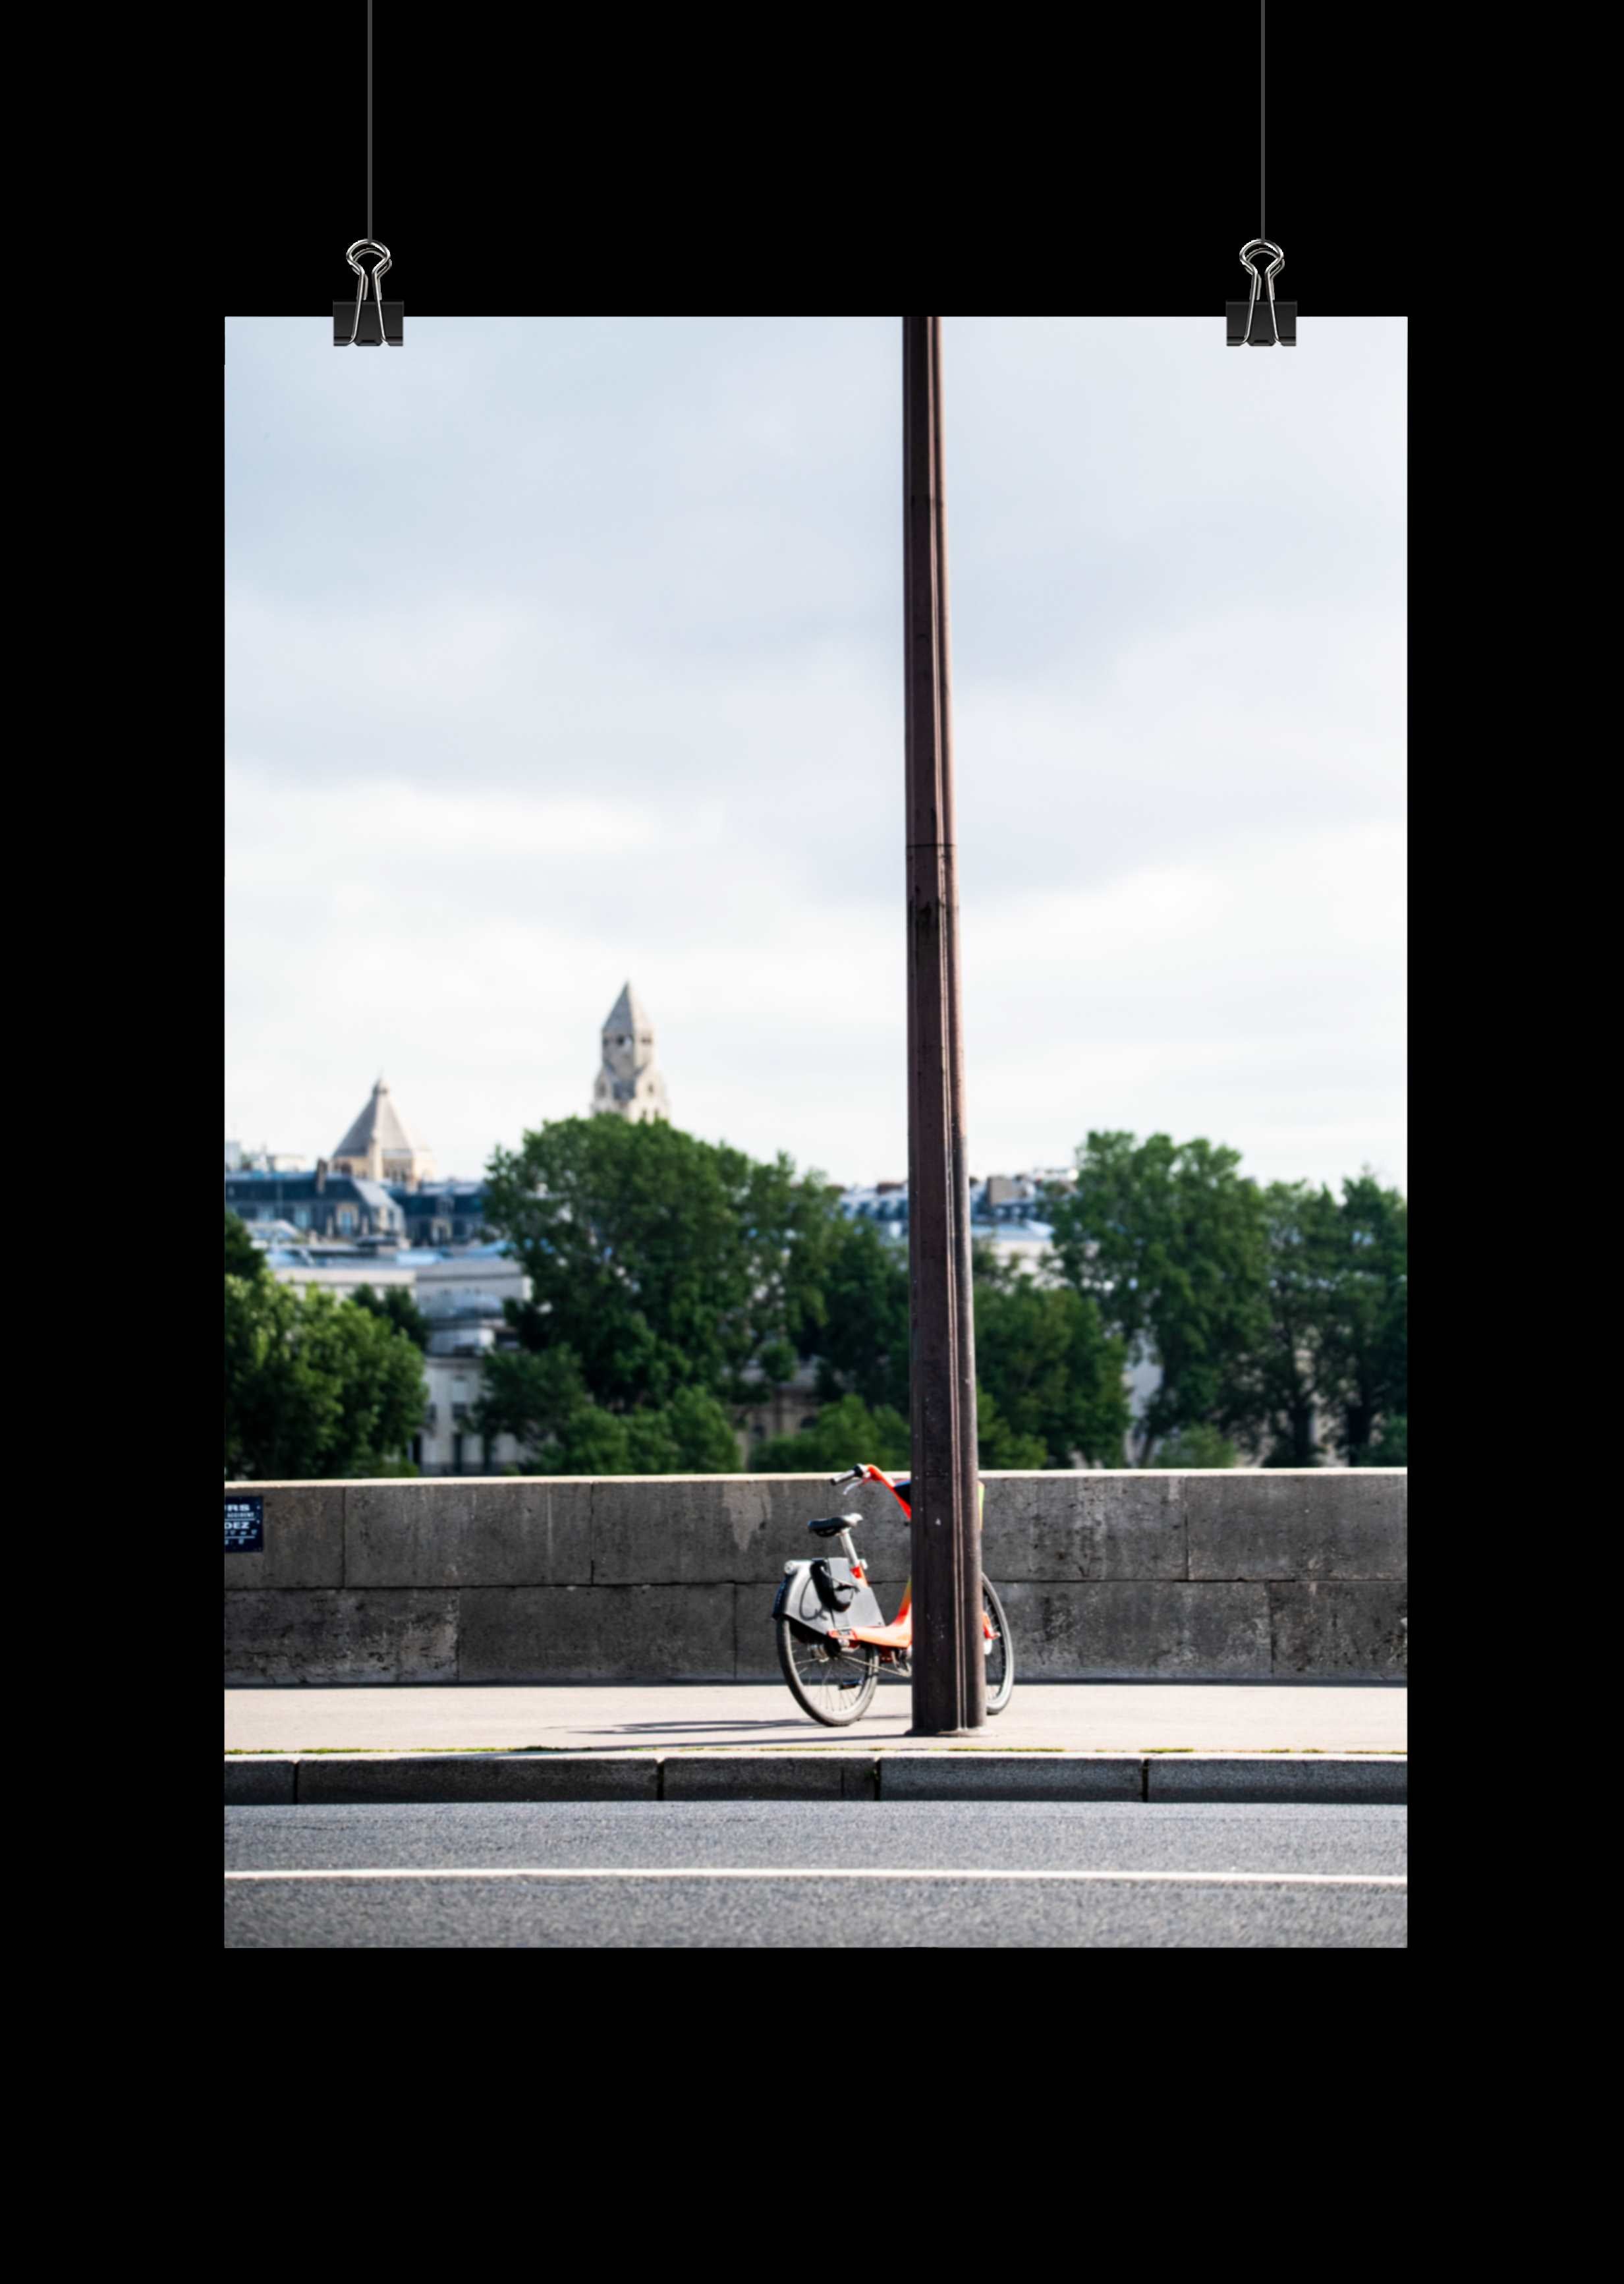 Vélo abandonné au centre de Paris - Poster - La boutique du poster Français